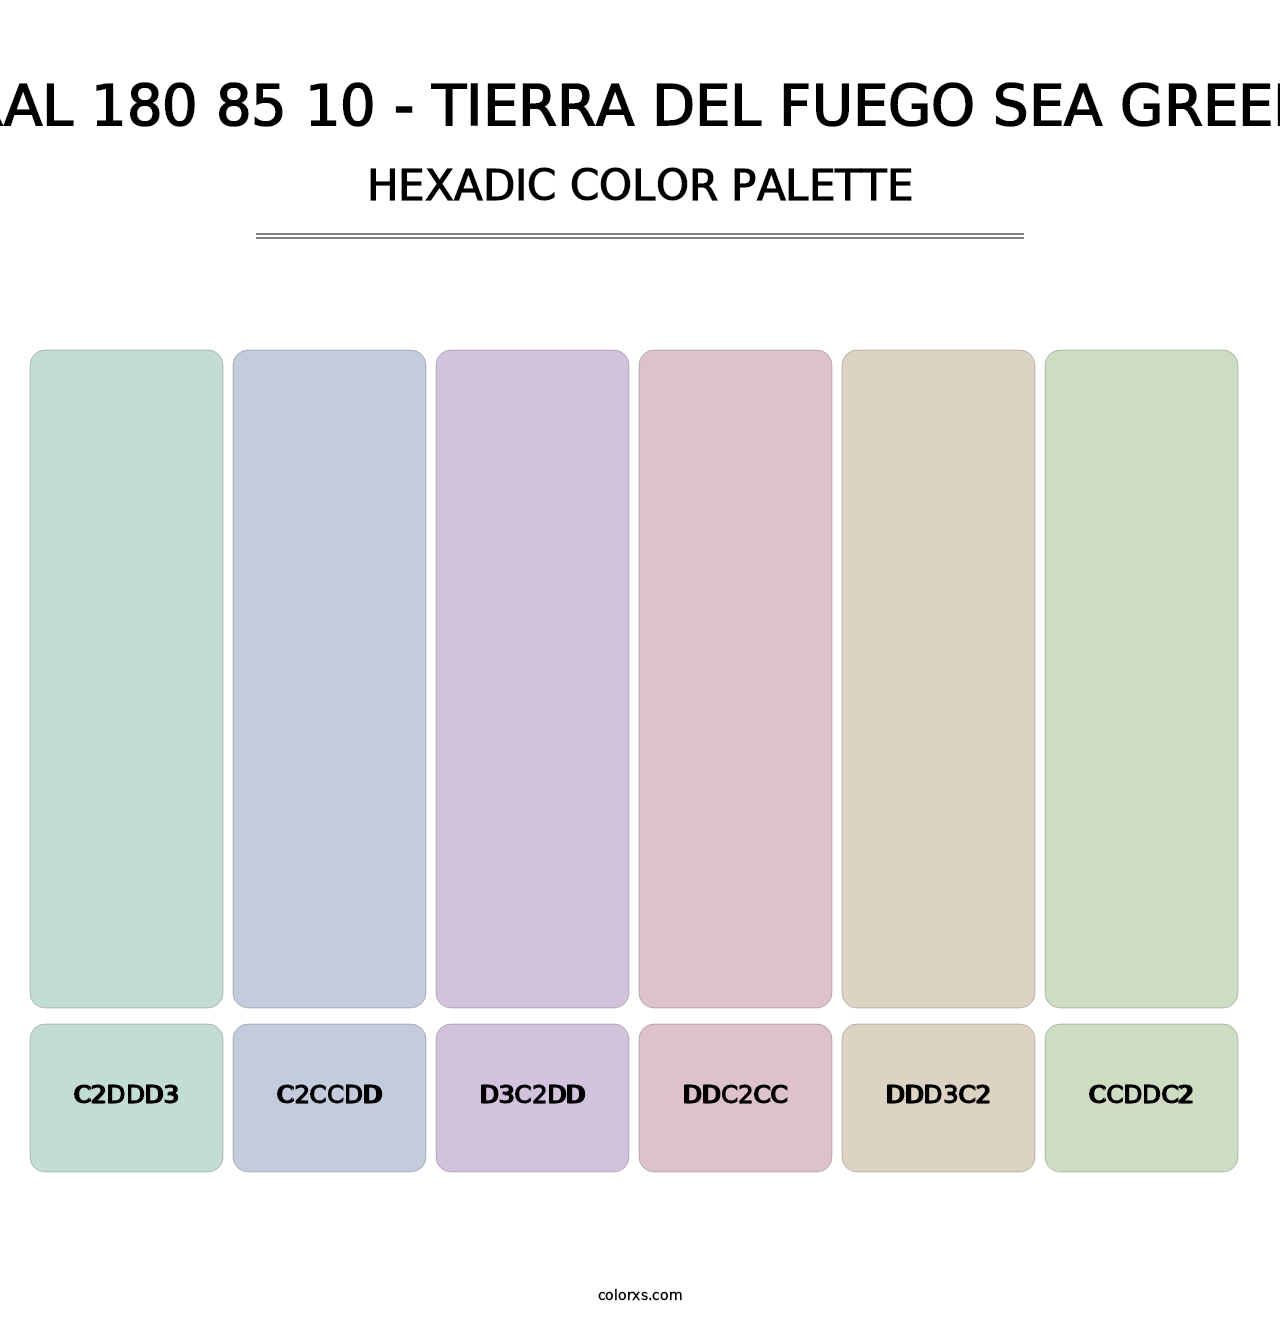 RAL 180 85 10 - Tierra Del Fuego Sea Green - Hexadic Color Palette